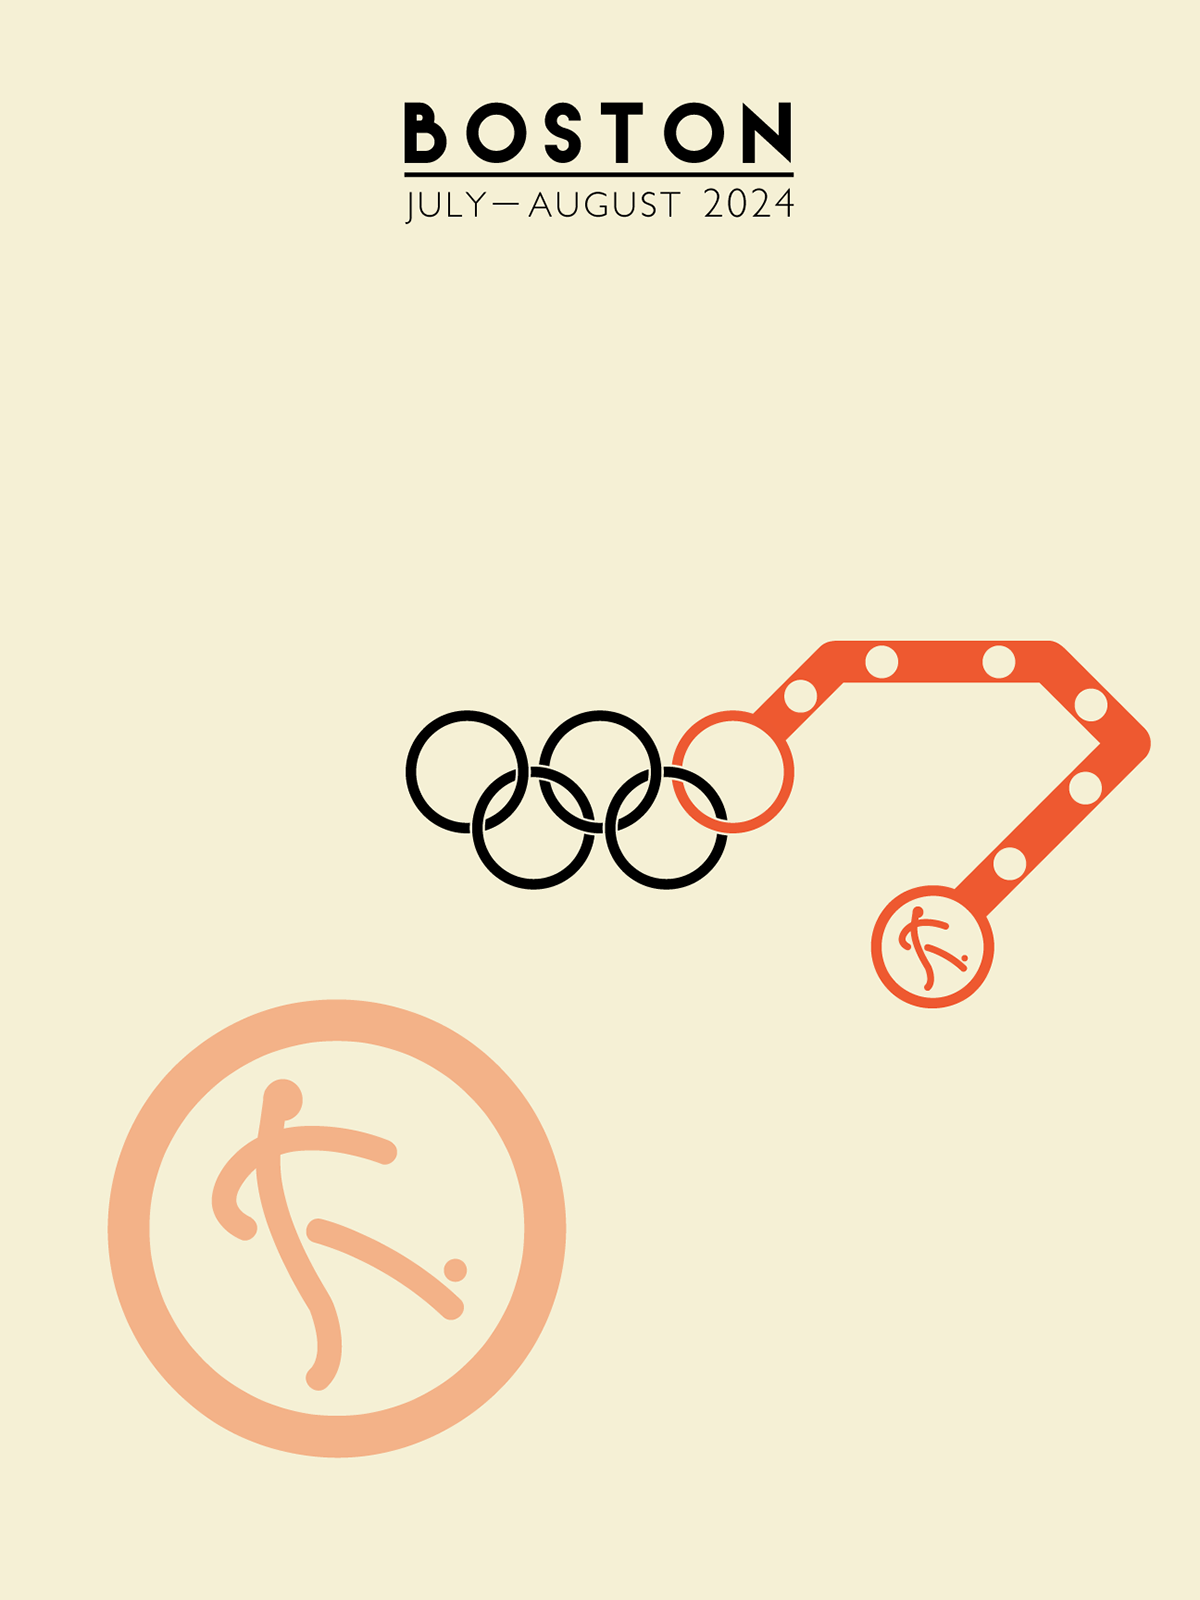 boston Olympics mbta posters sports